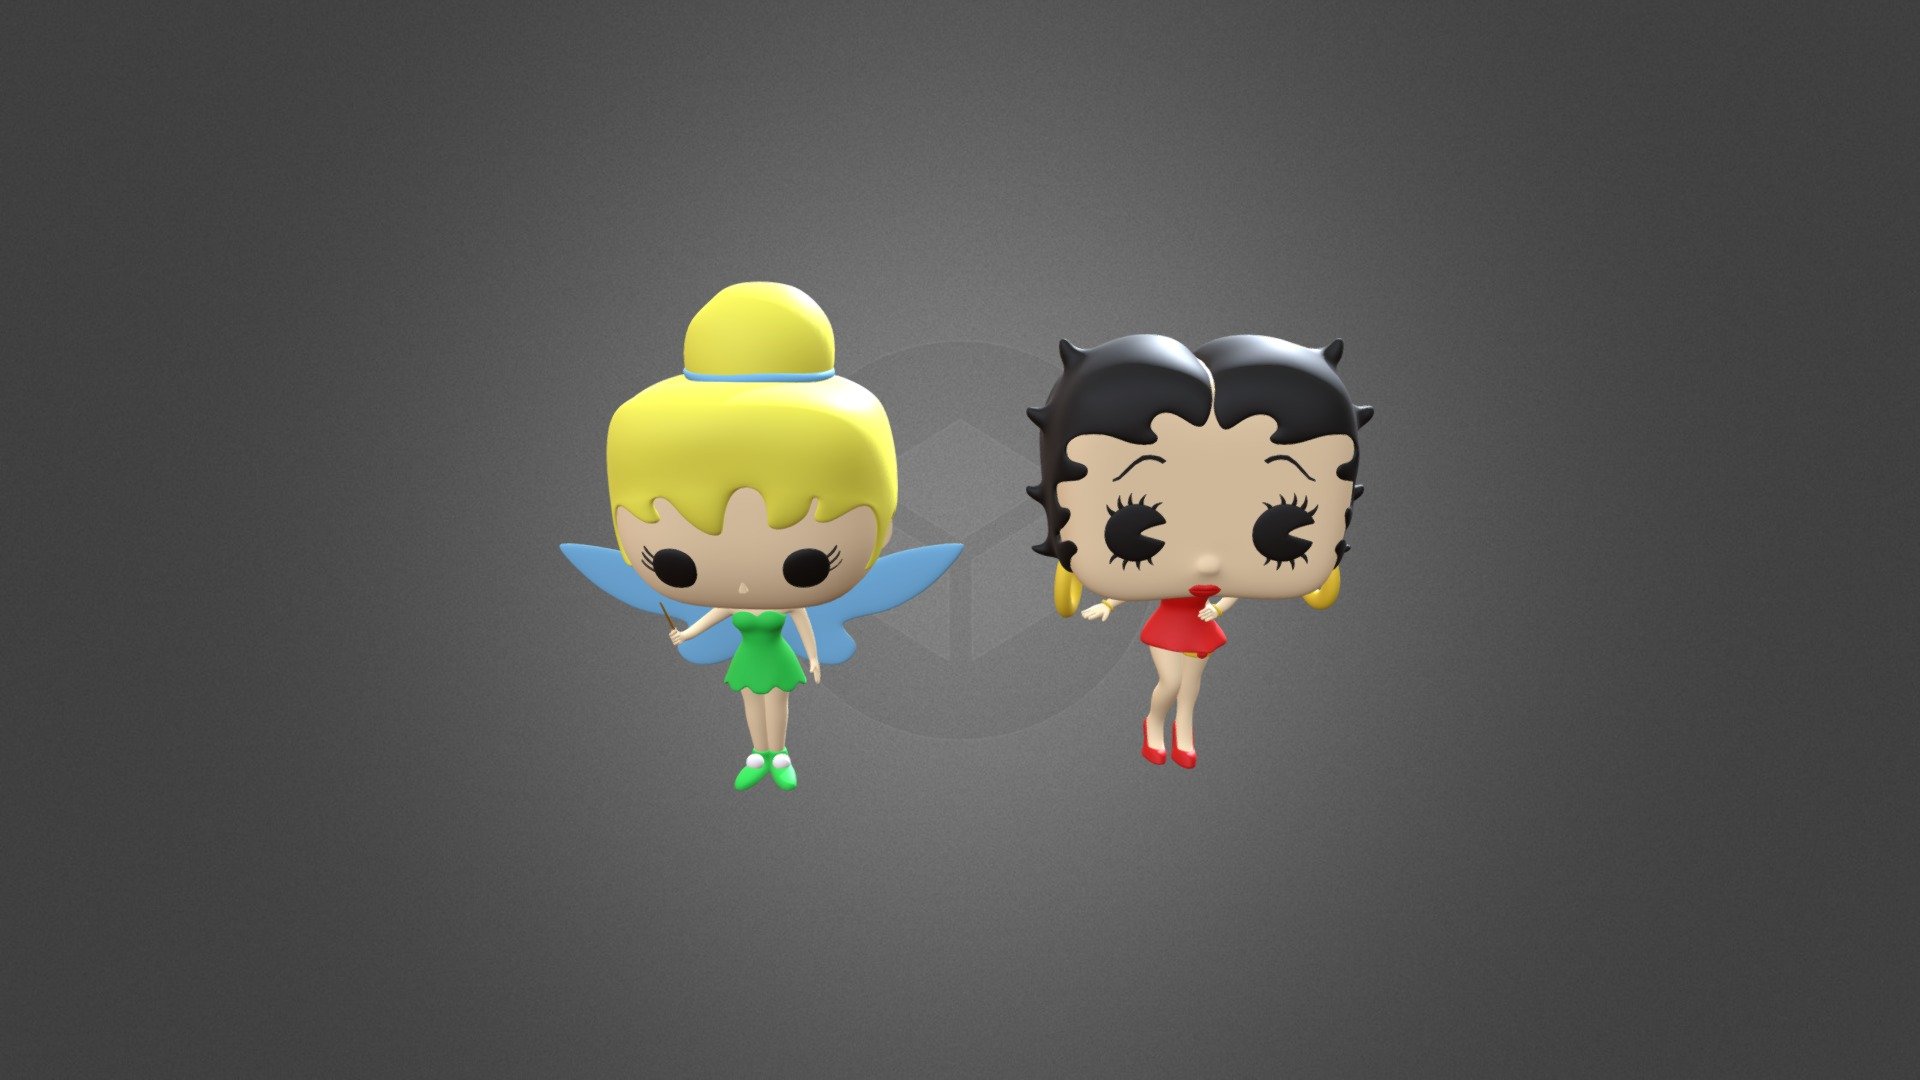 Tinker bell e Betty Boop estilo funko pop - Sininho e Betty Boop - 3D model by nanascar3d 3d model